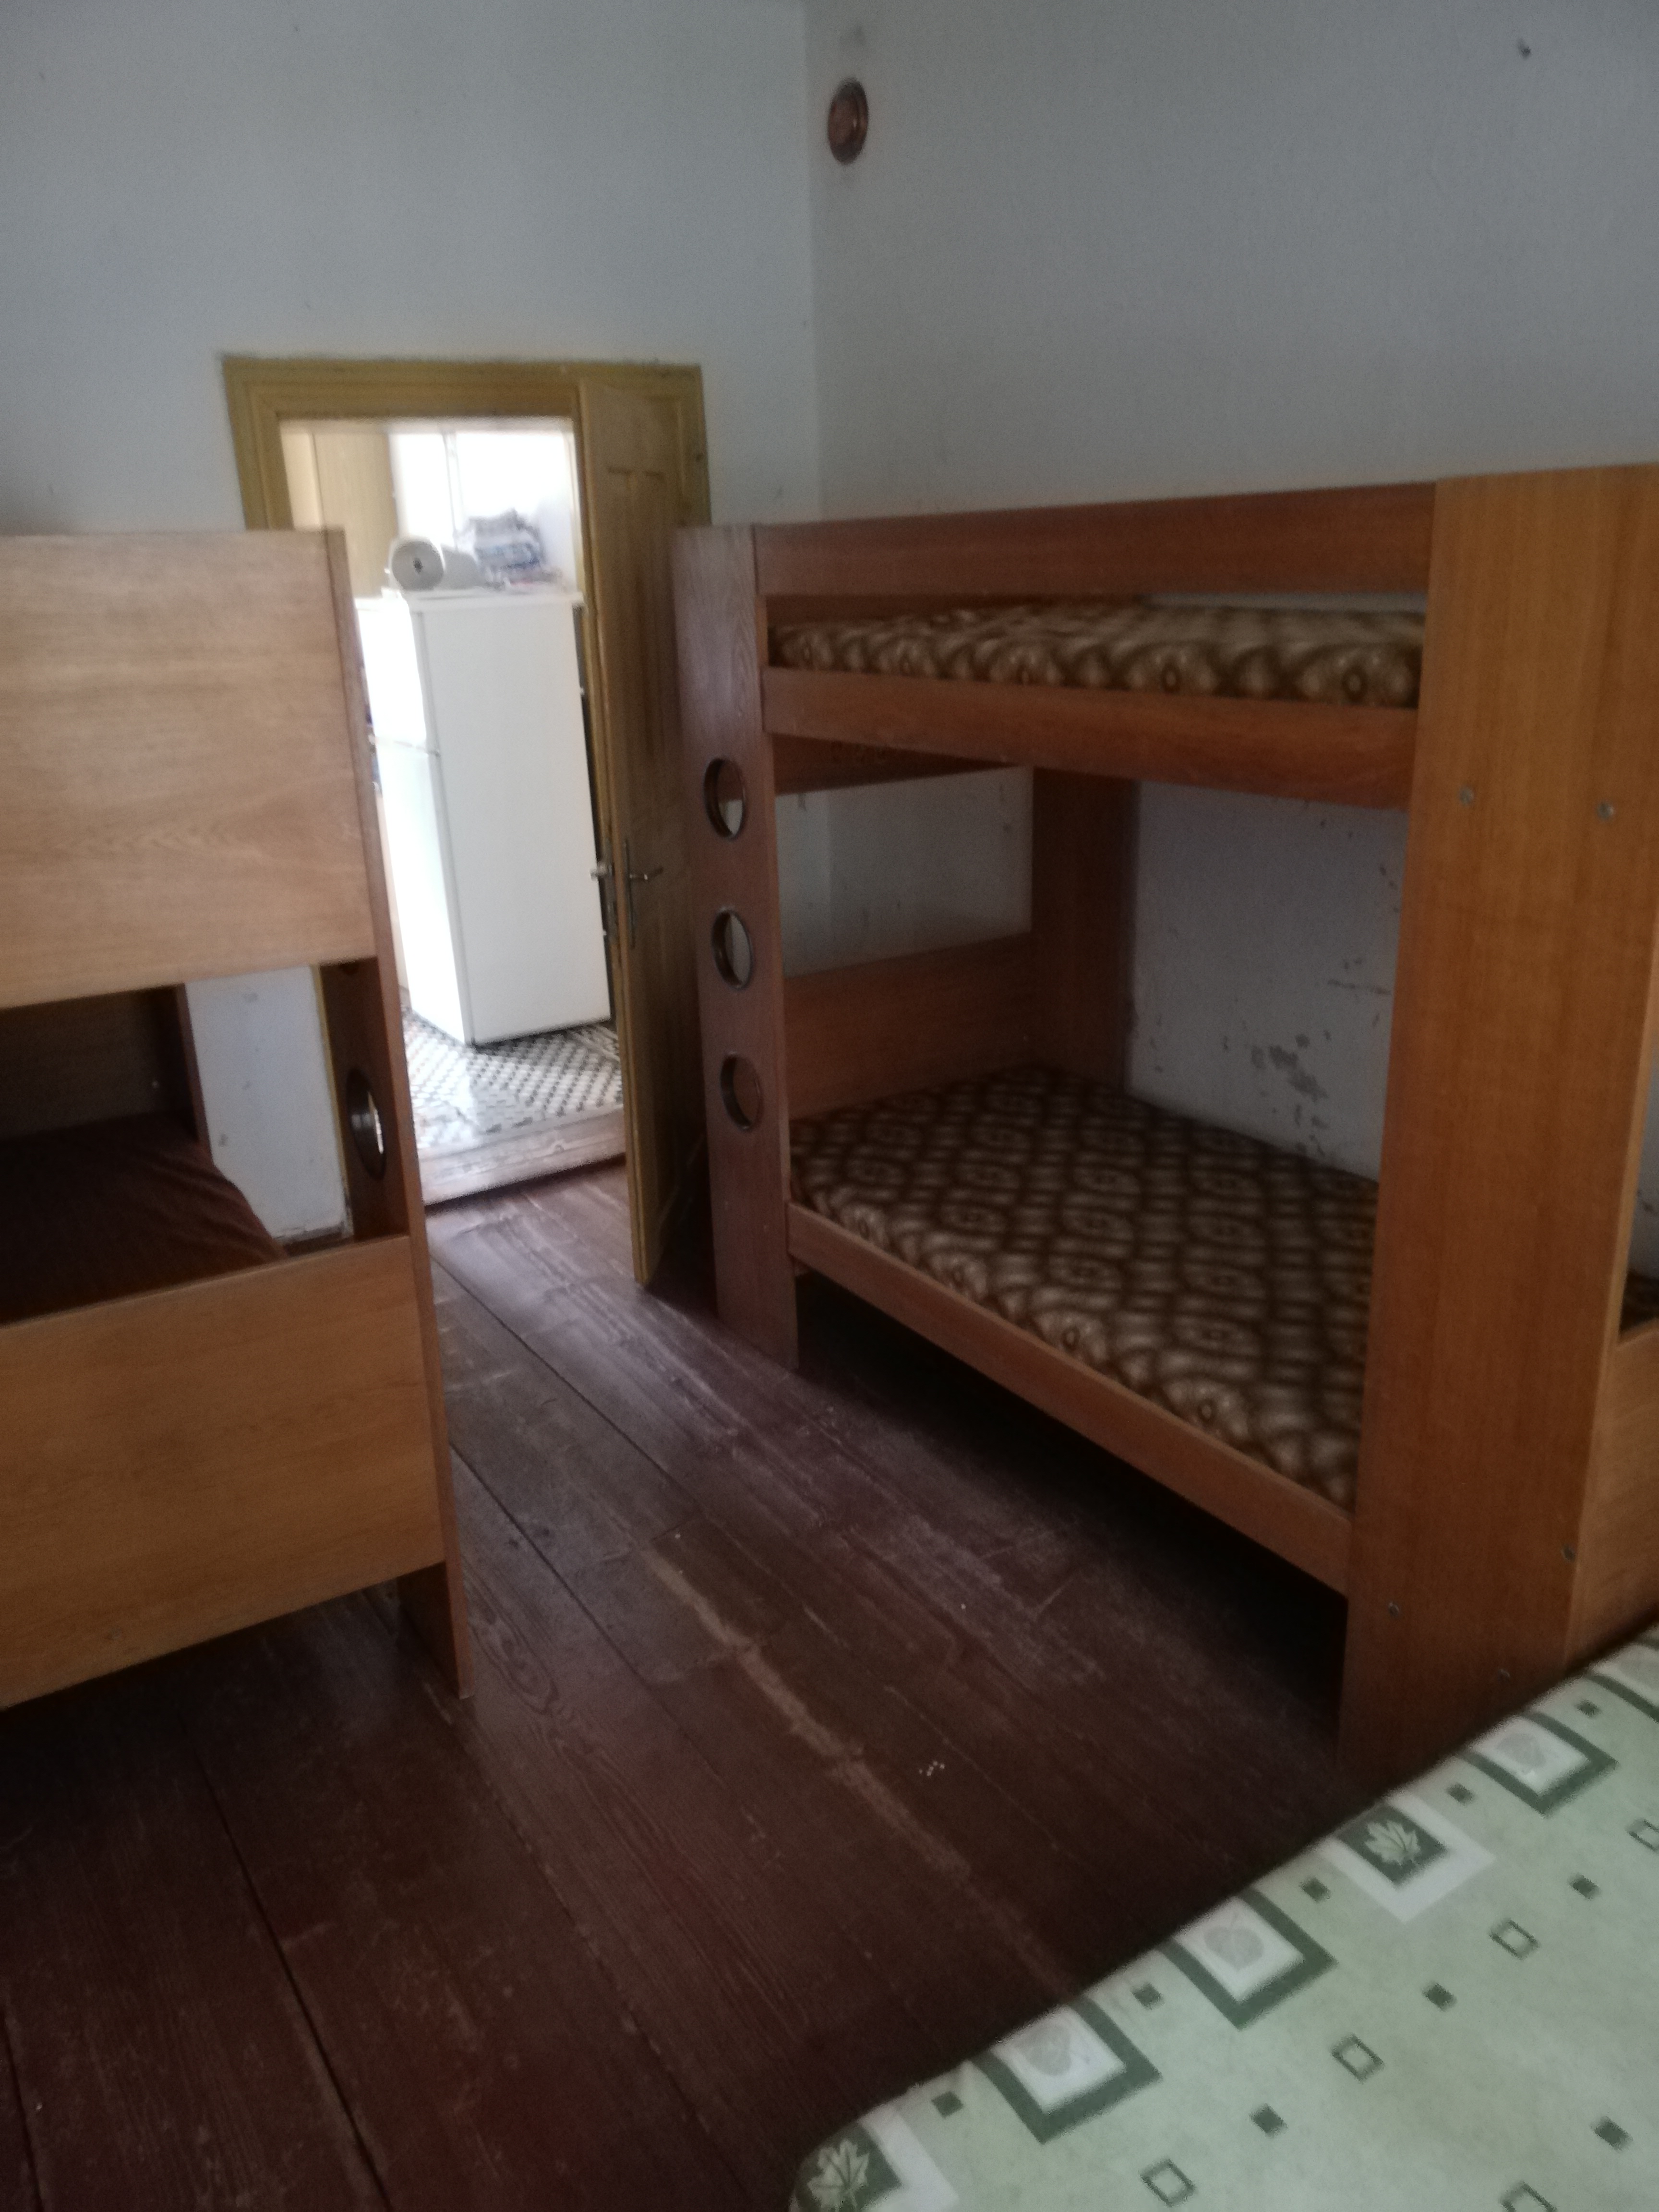 Ostrov u Macochy, Fara Ostrov u Macochy - pokoj vedle kuchyně-2 patrové postele +jedna postel